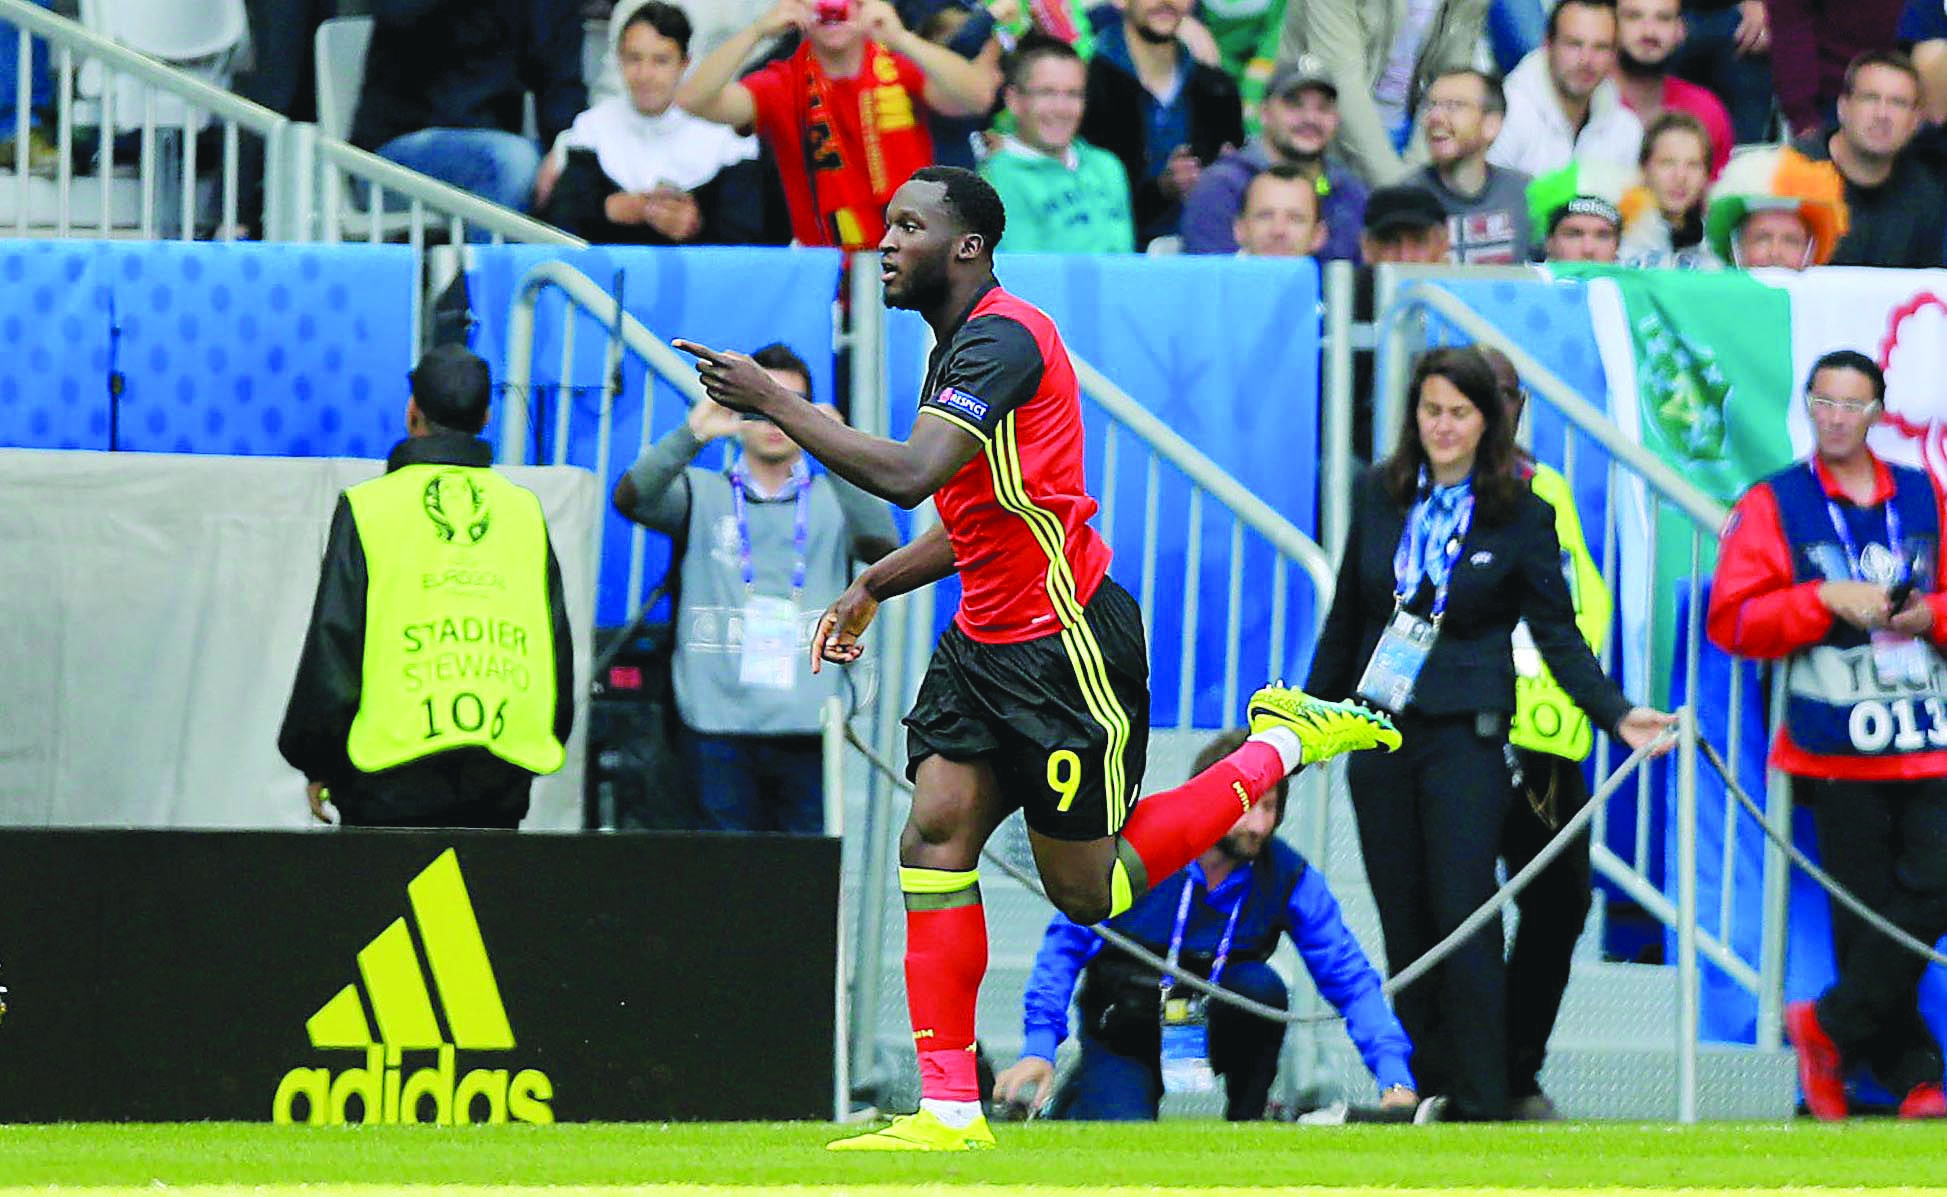 Take Romelu Lukaku to open the scoring for Belgium against Denmark